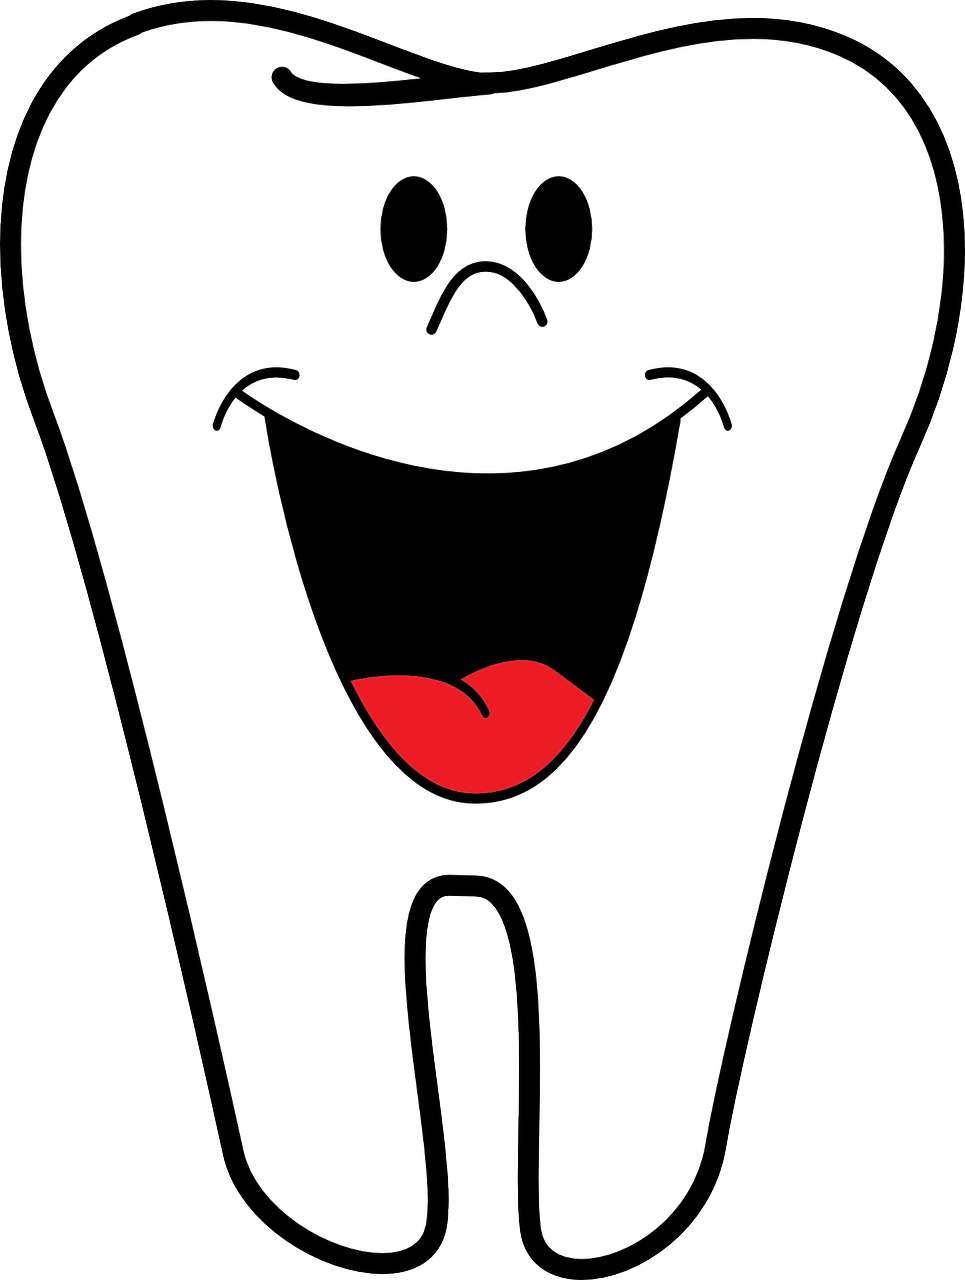 Tandlæge – alt hvad du skal vide hvis du har tandproblemer